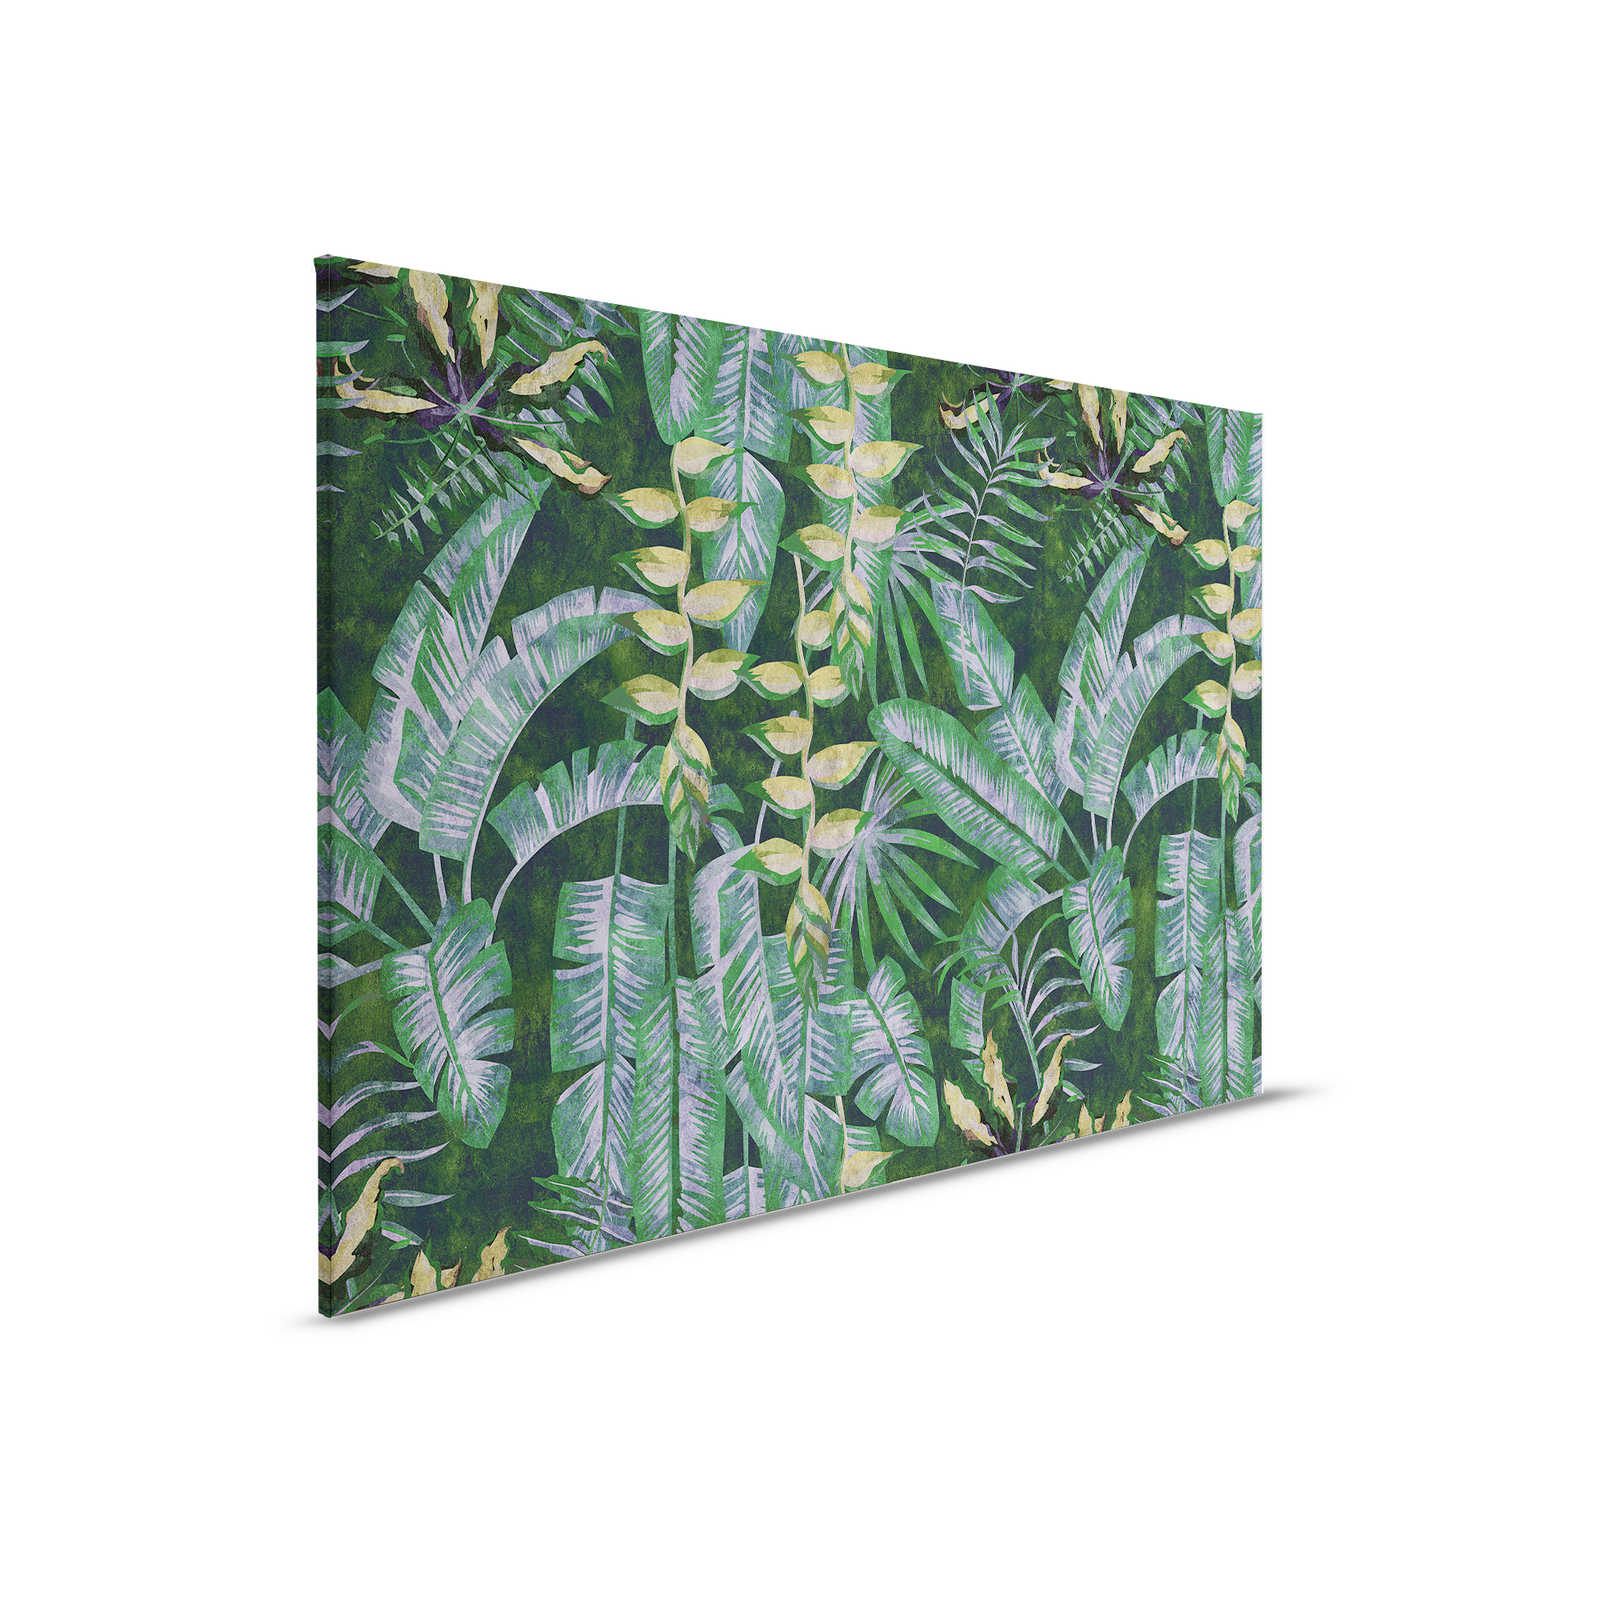 Tropicana 2 - Toile avec plantes tropicales - 0,90 m x 0,60 m
